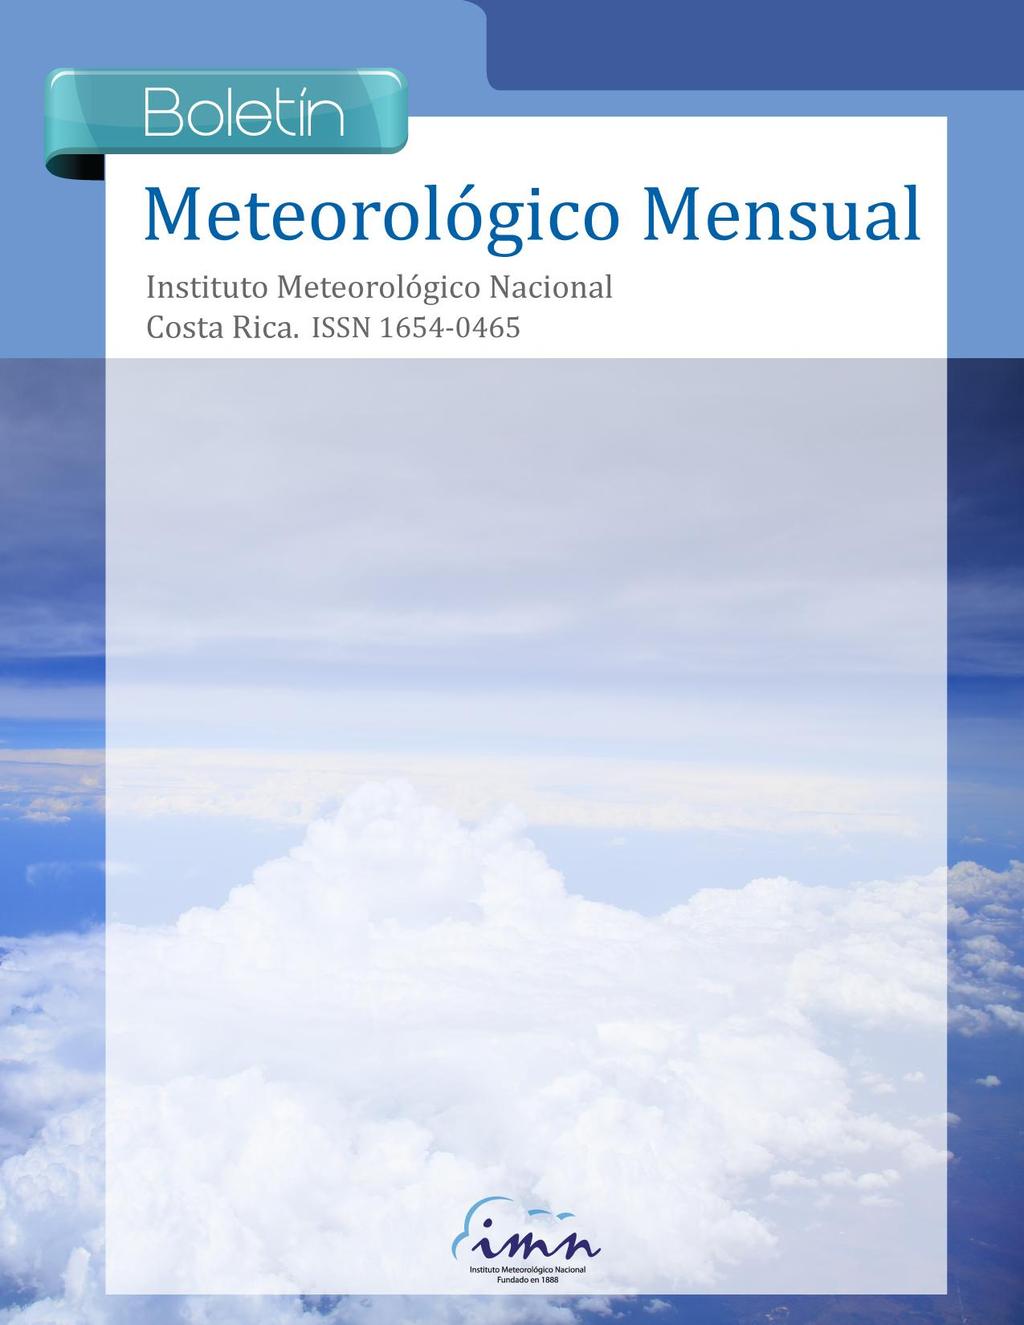 1 Resumen Meteorológico Boletín Octubre Meteorológico 213 Mensual Contenido Página Resumen Meteorológico Mensual...2 Información Climática Estaciones termopluviométricas.